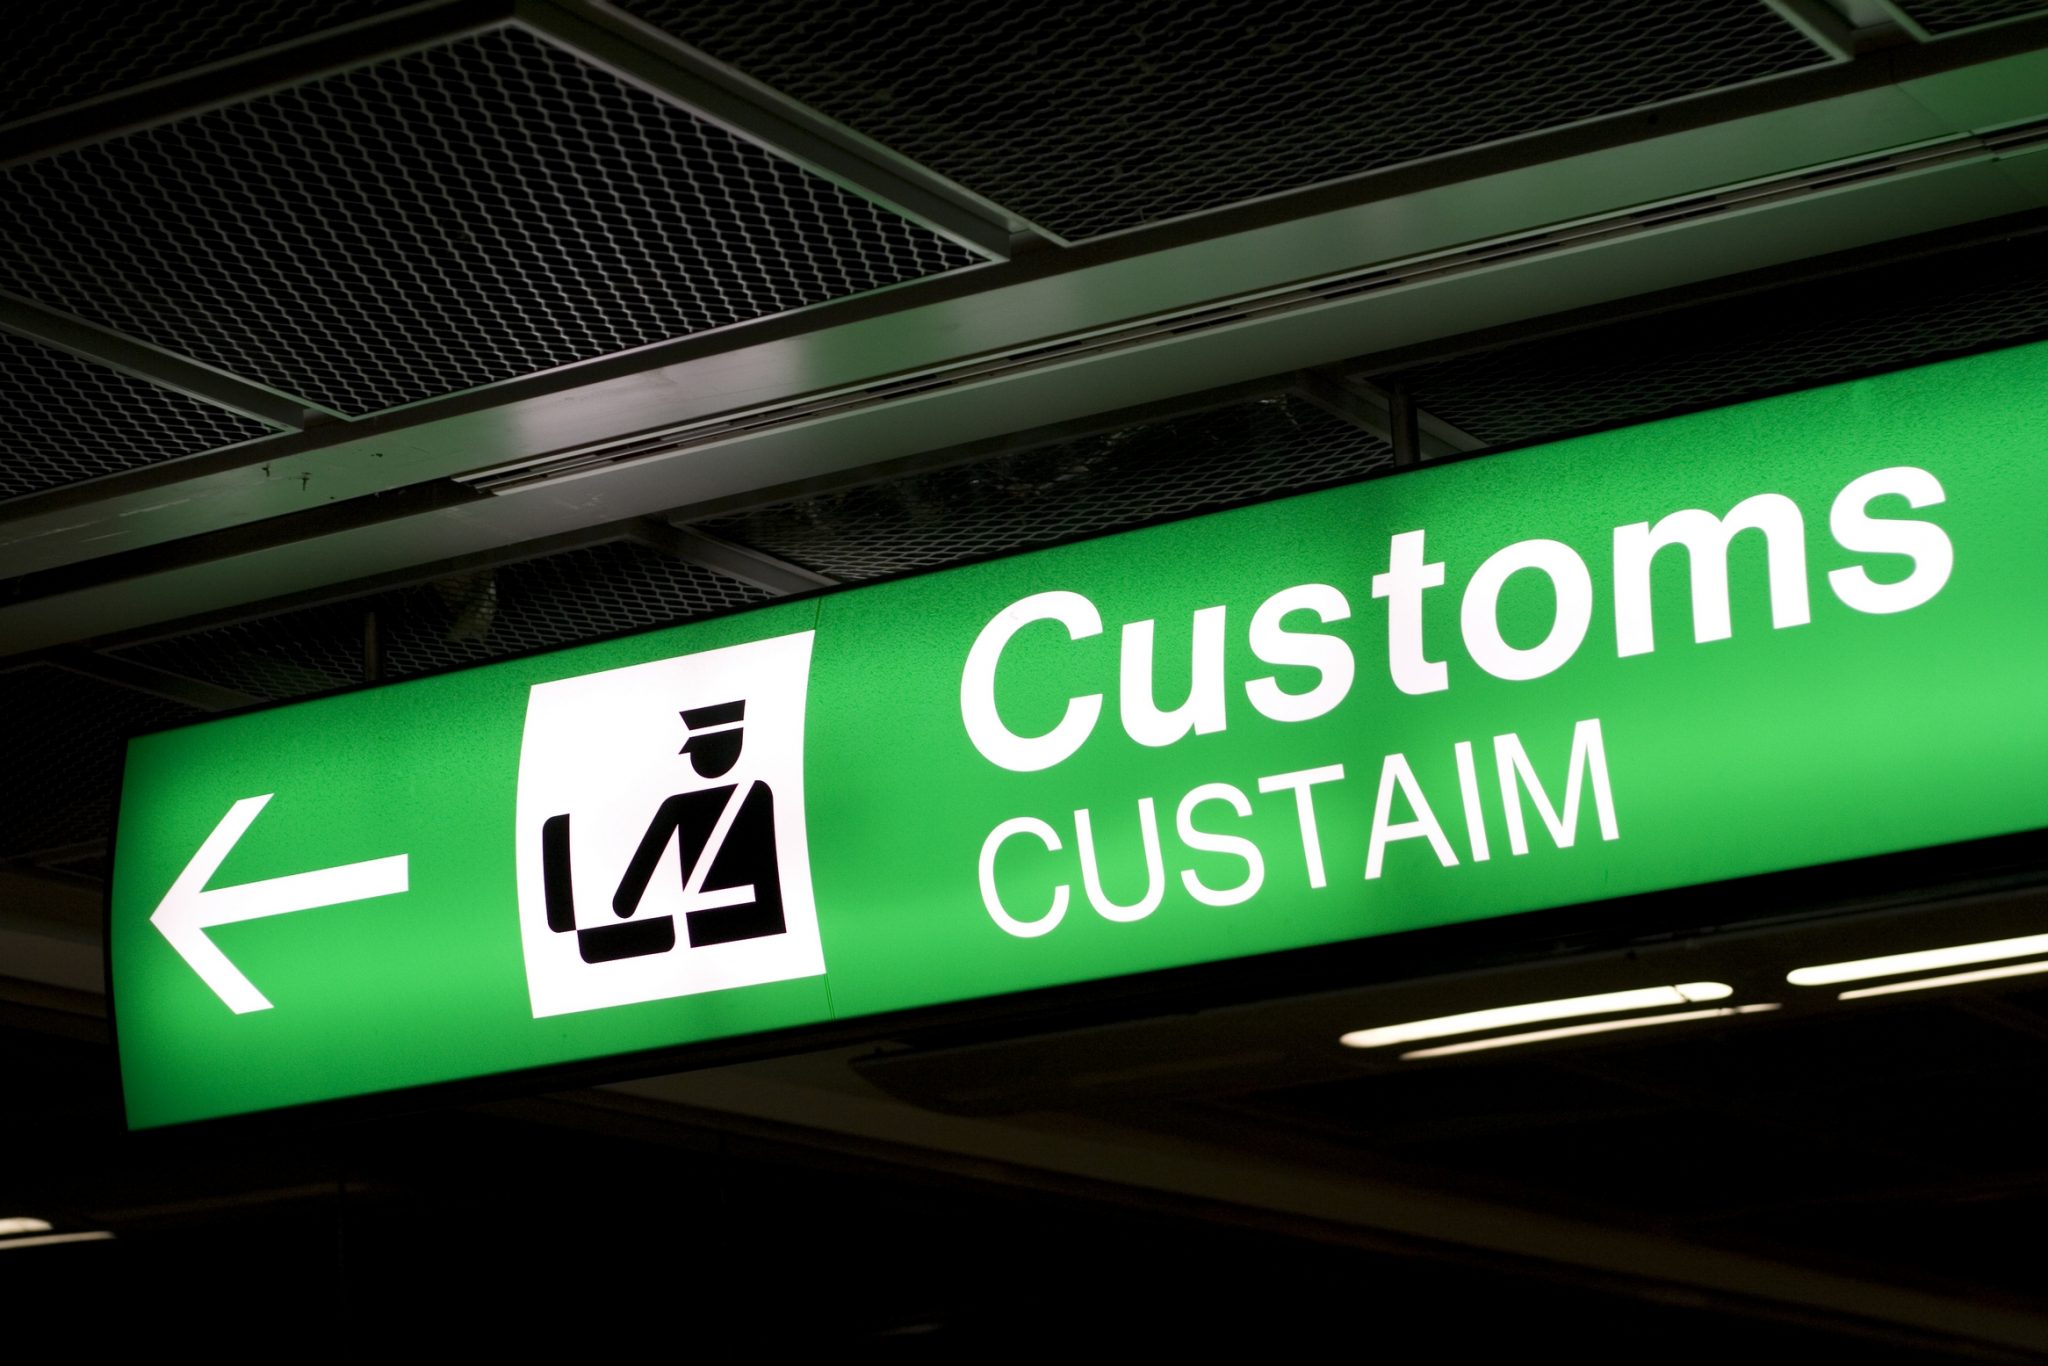 Customs is over. Таможня Customs. Customs картинки. Custom. Картинки в аэропорту Customs.